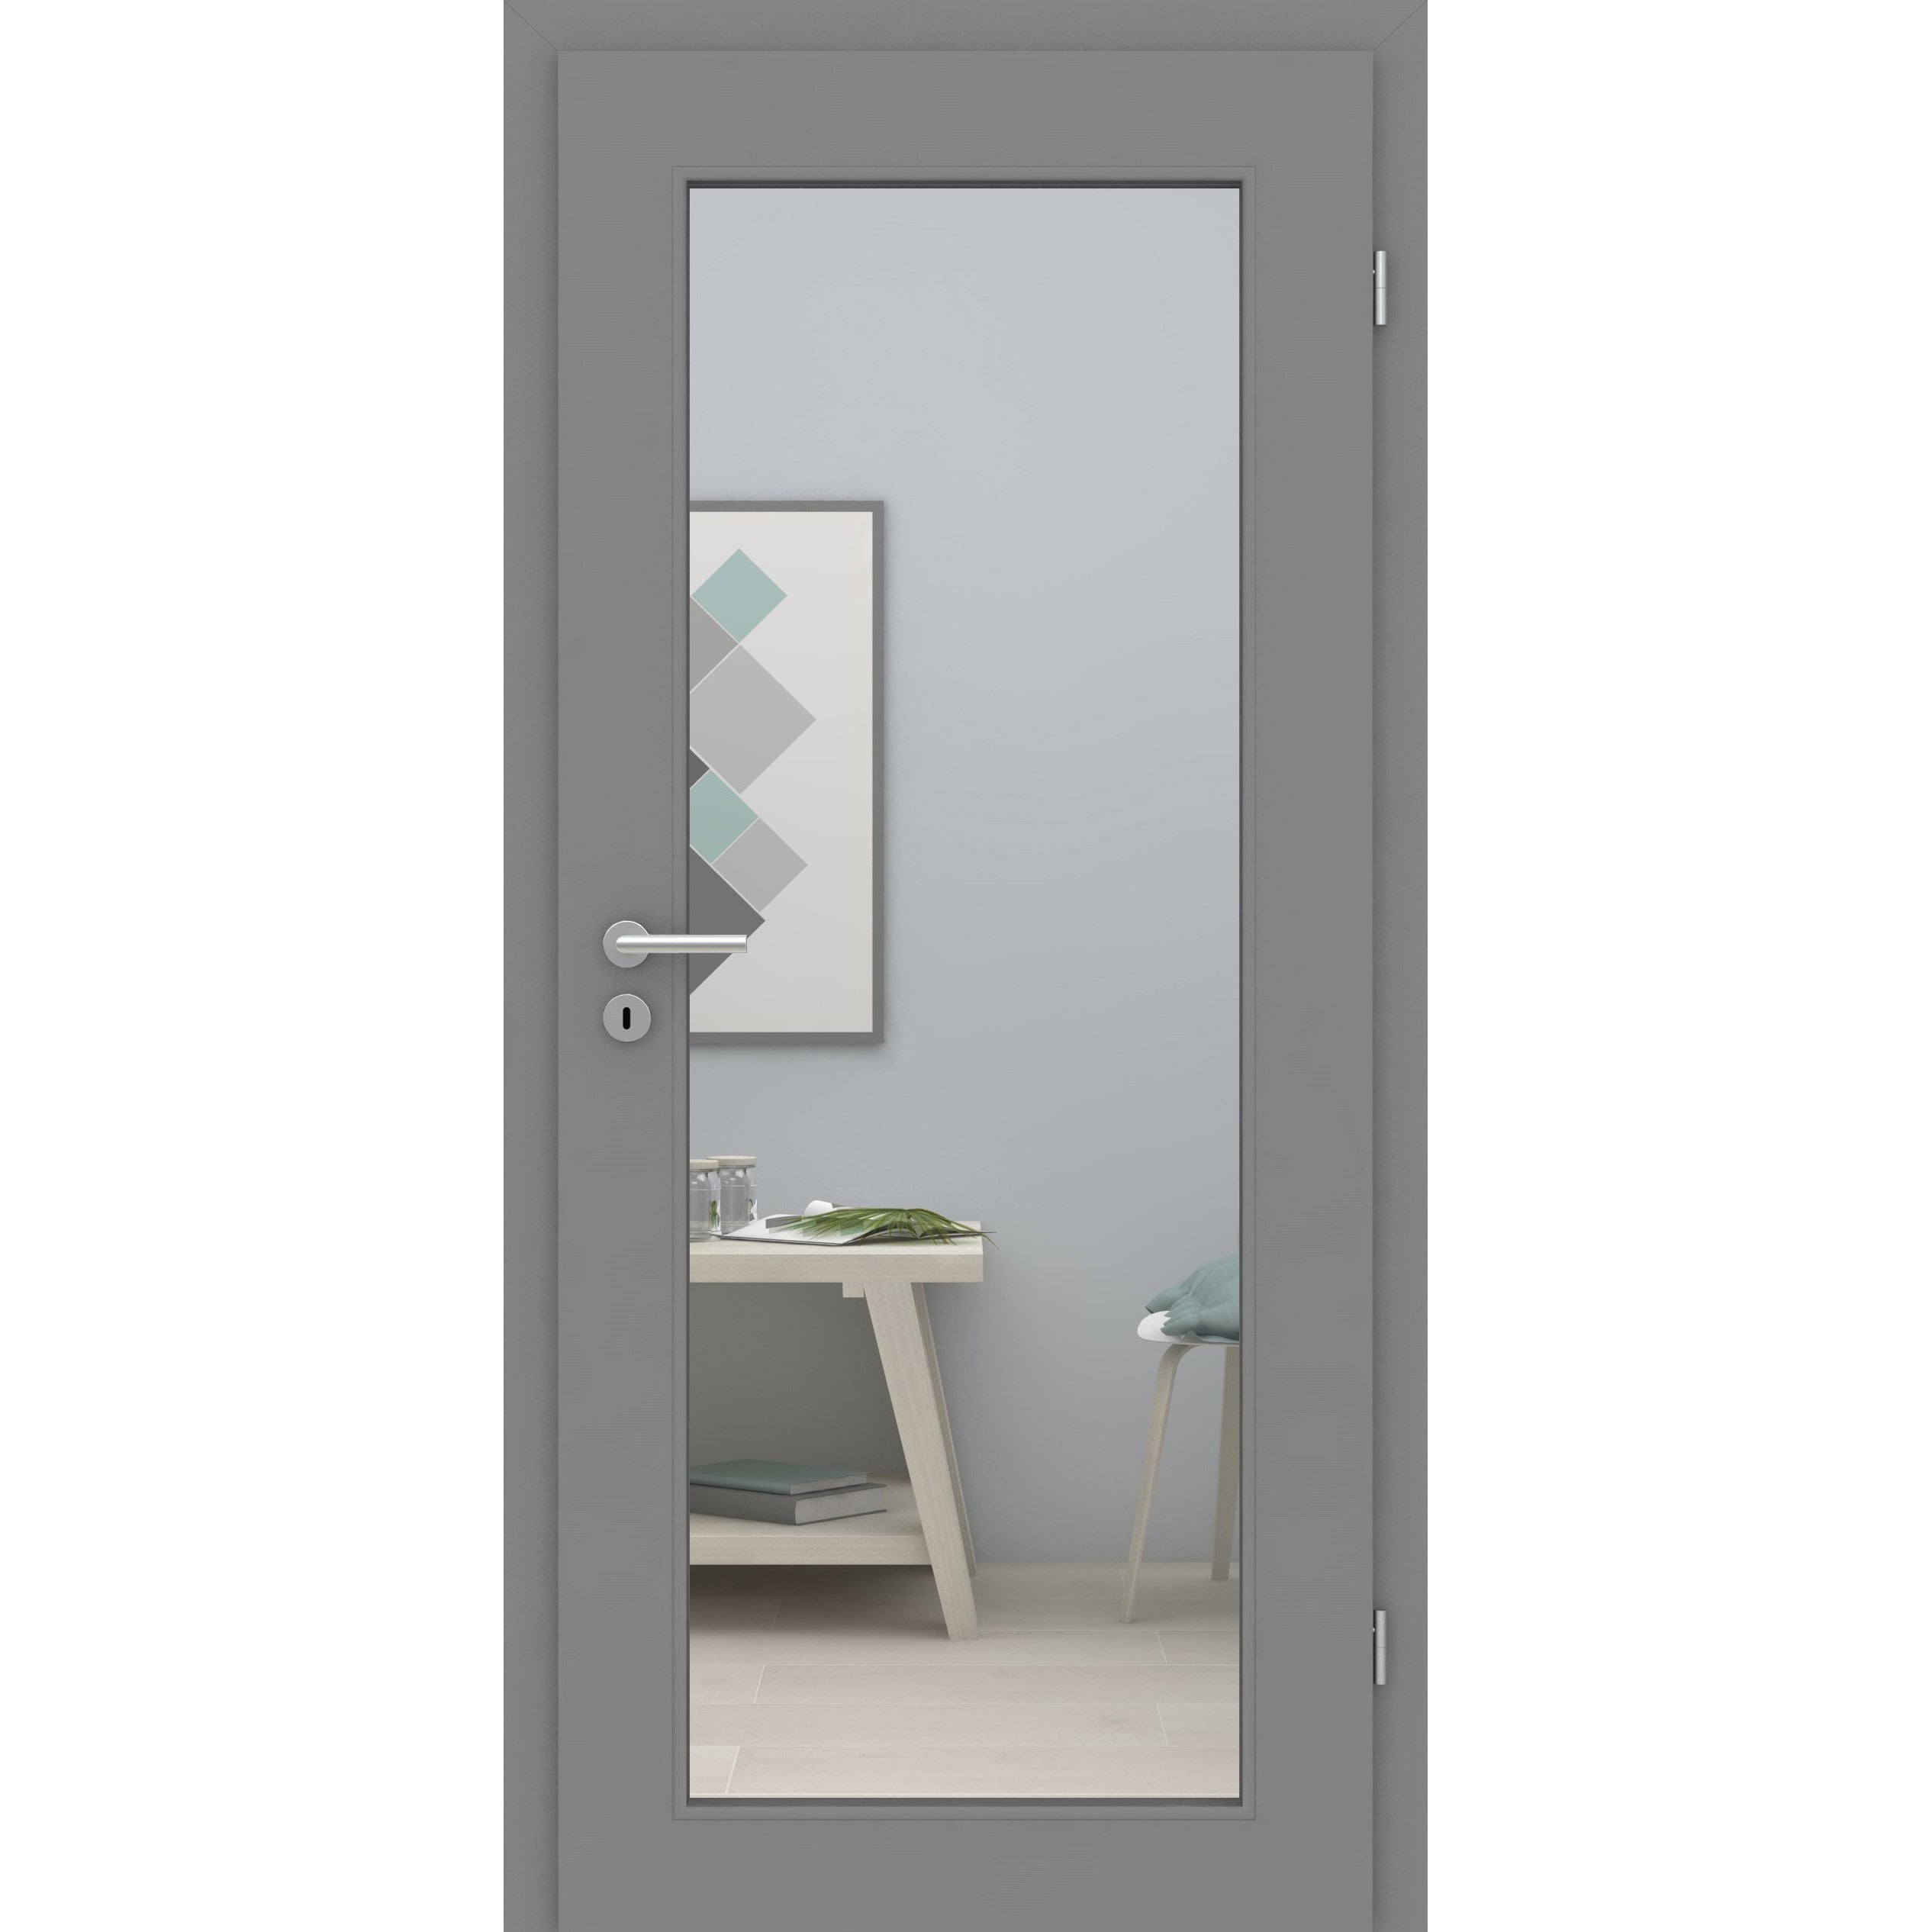 Zimmertür mit Lichtausschnitt XL grau glatt Designkante - Modell LAXL